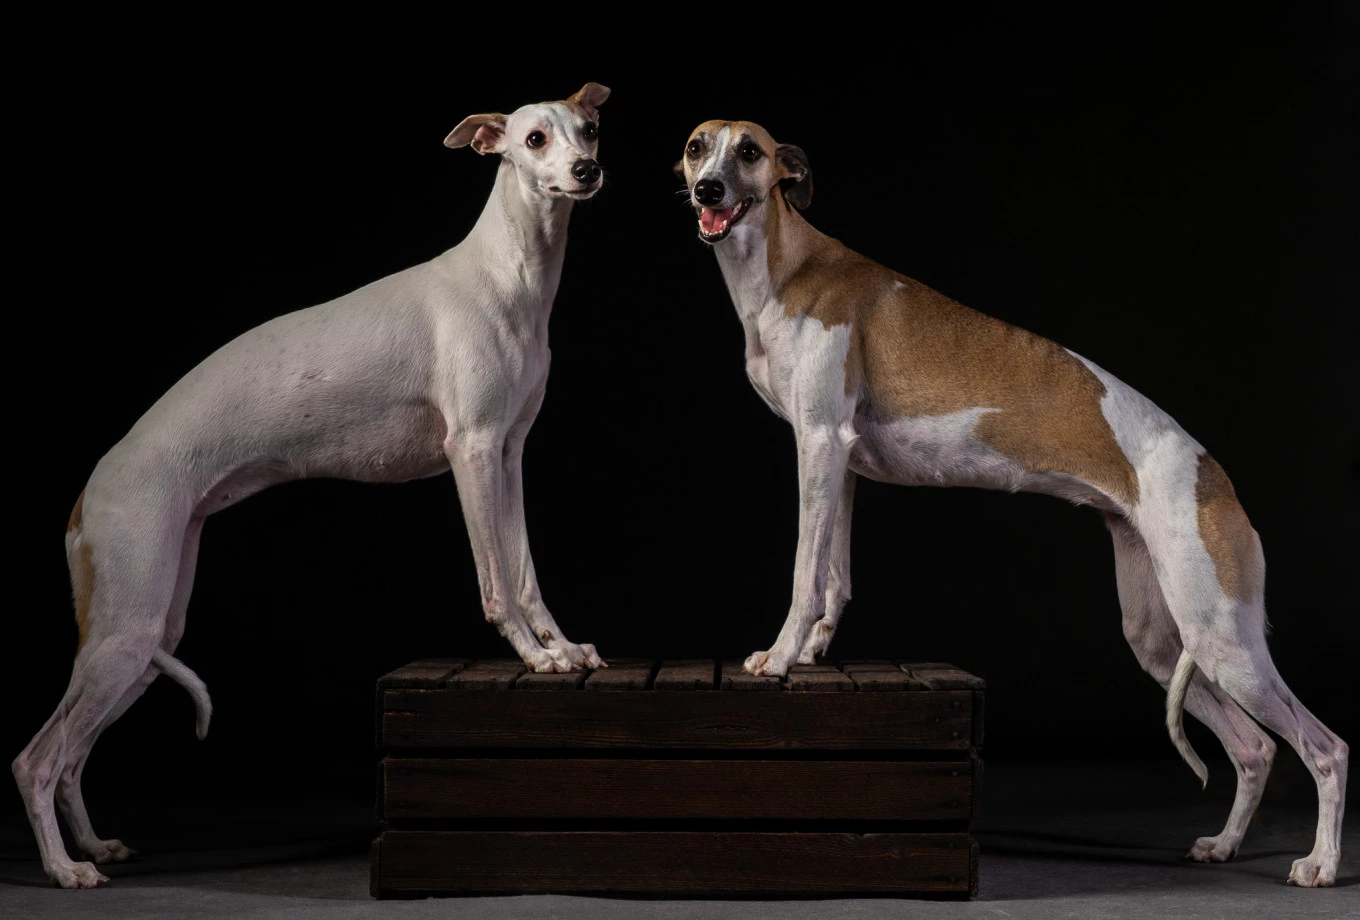 fotograf opole inoinu portfolio zdjecia zdjecia zwierzat sesja zdjeciowa konie psy koty